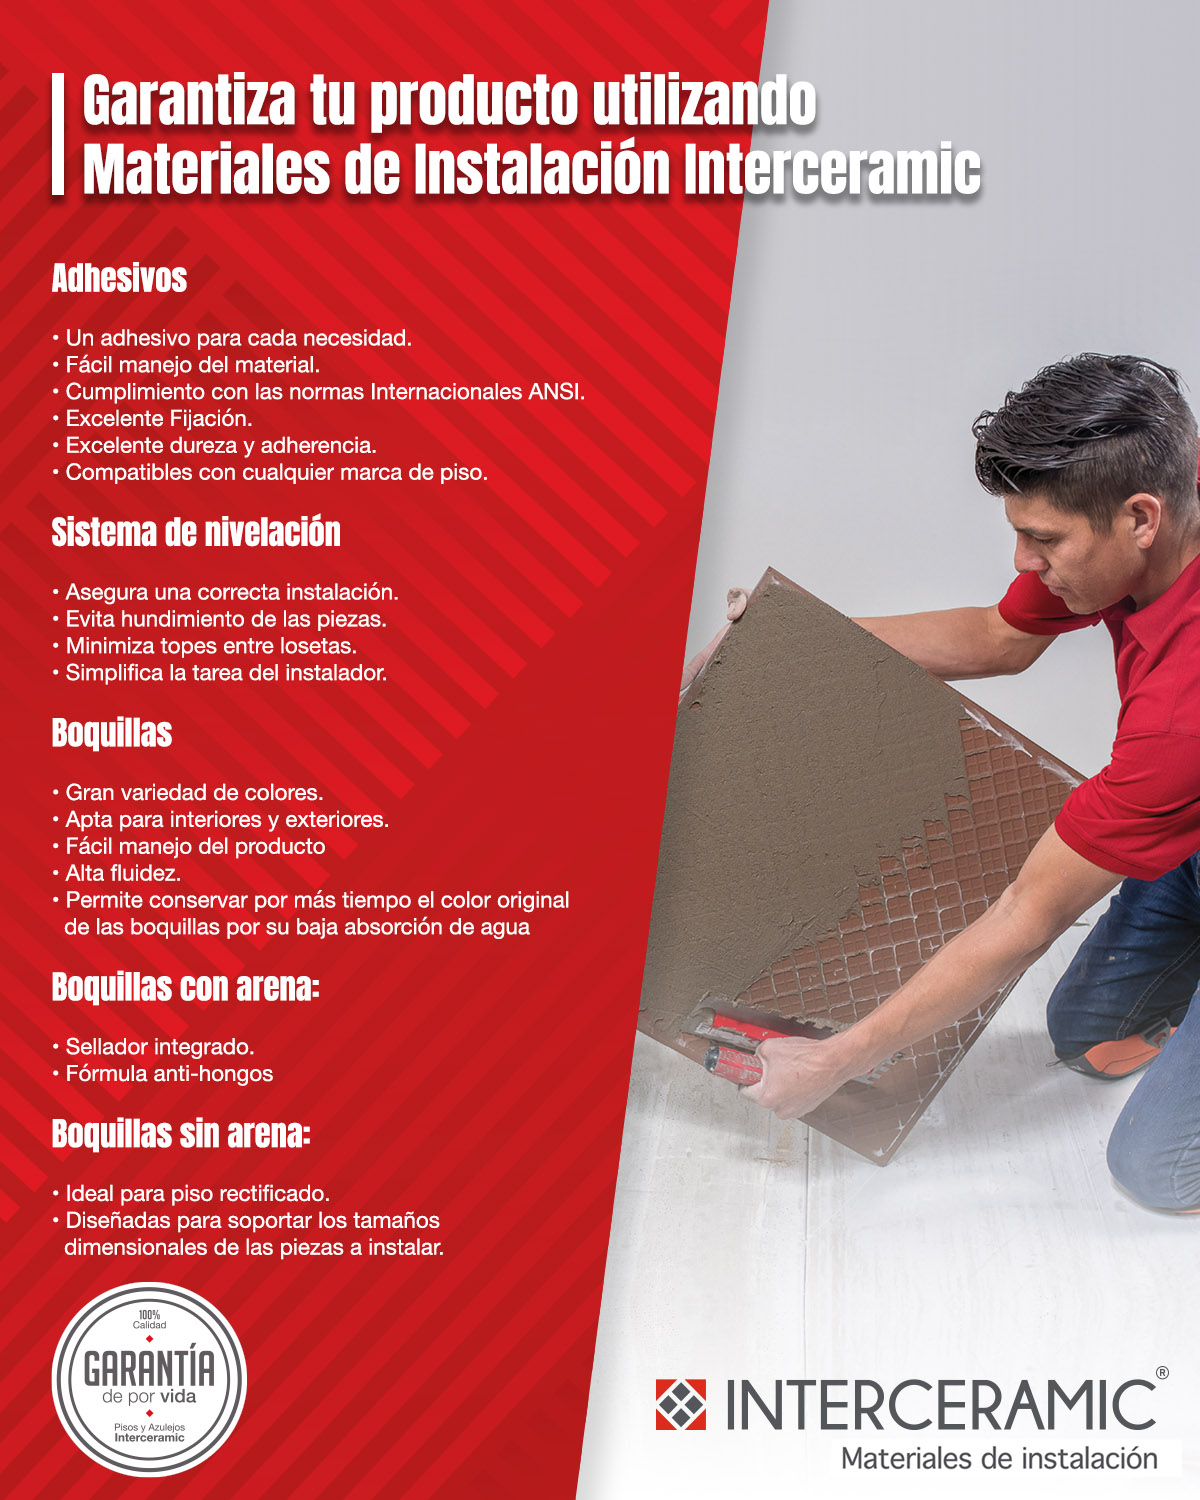 Interceramic Garantía Materiales Instalación The Home Depot México